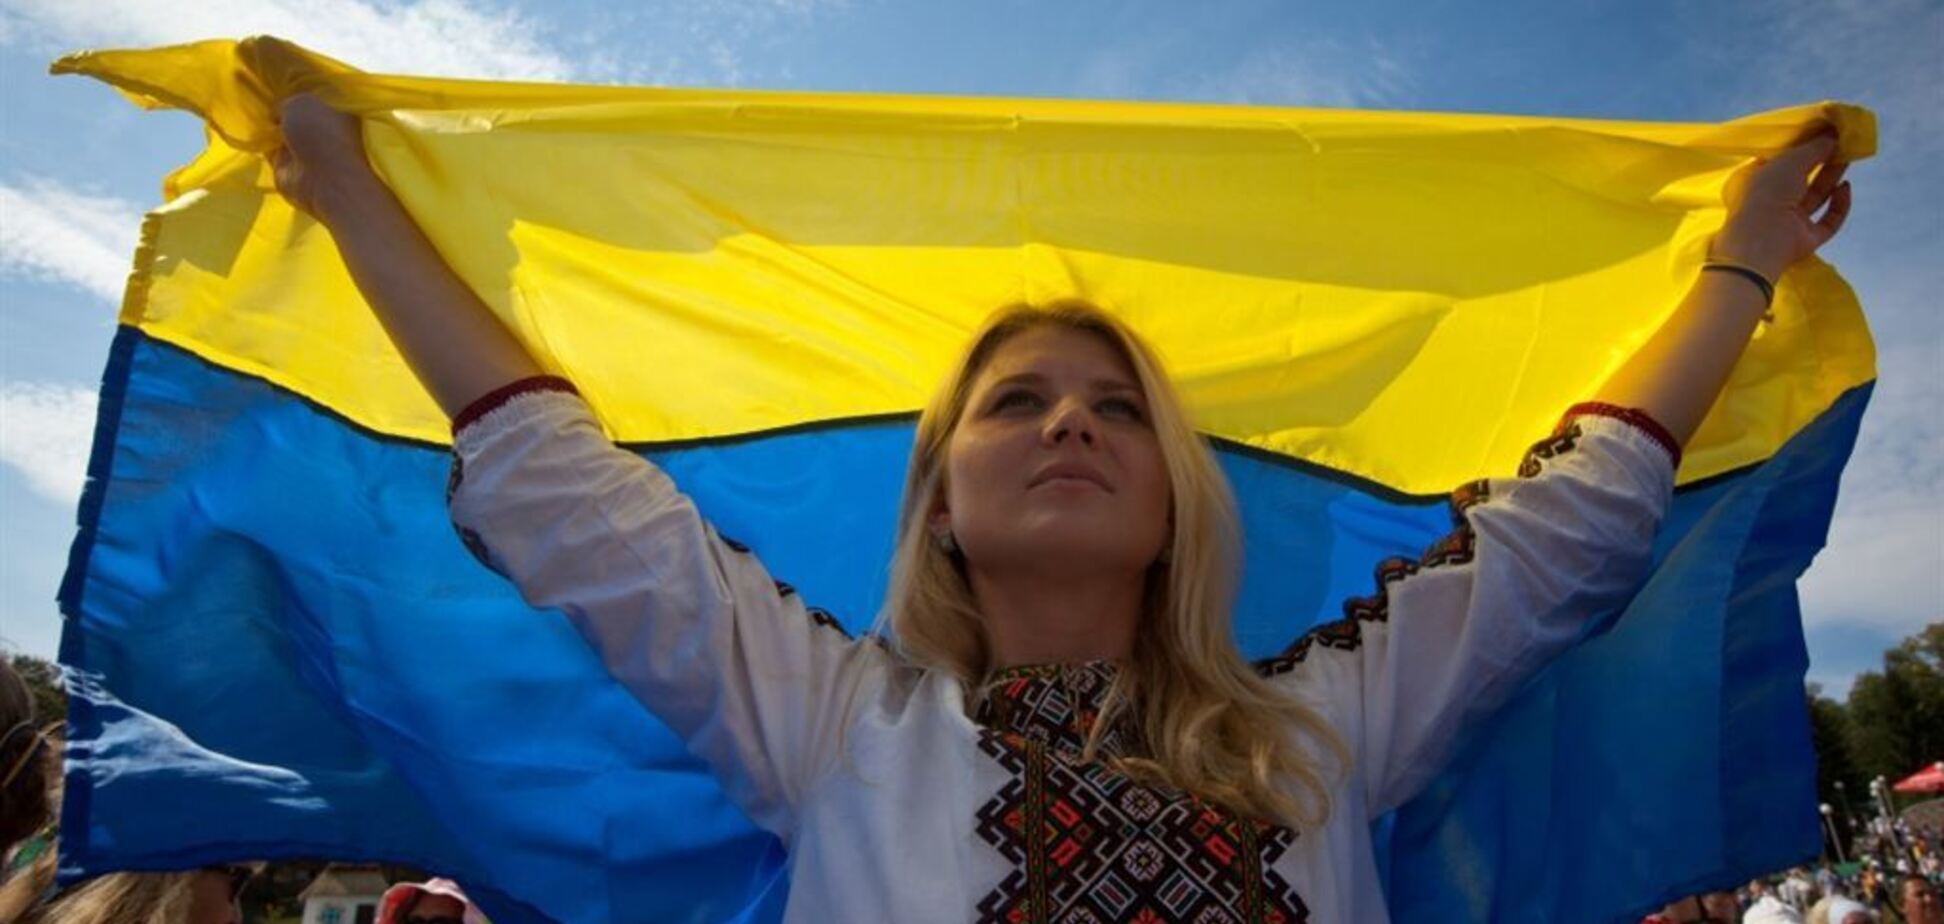  Днепр, Павлоград, Одесса: Вятрович анонсировал кардинальные изменения в истории Украины